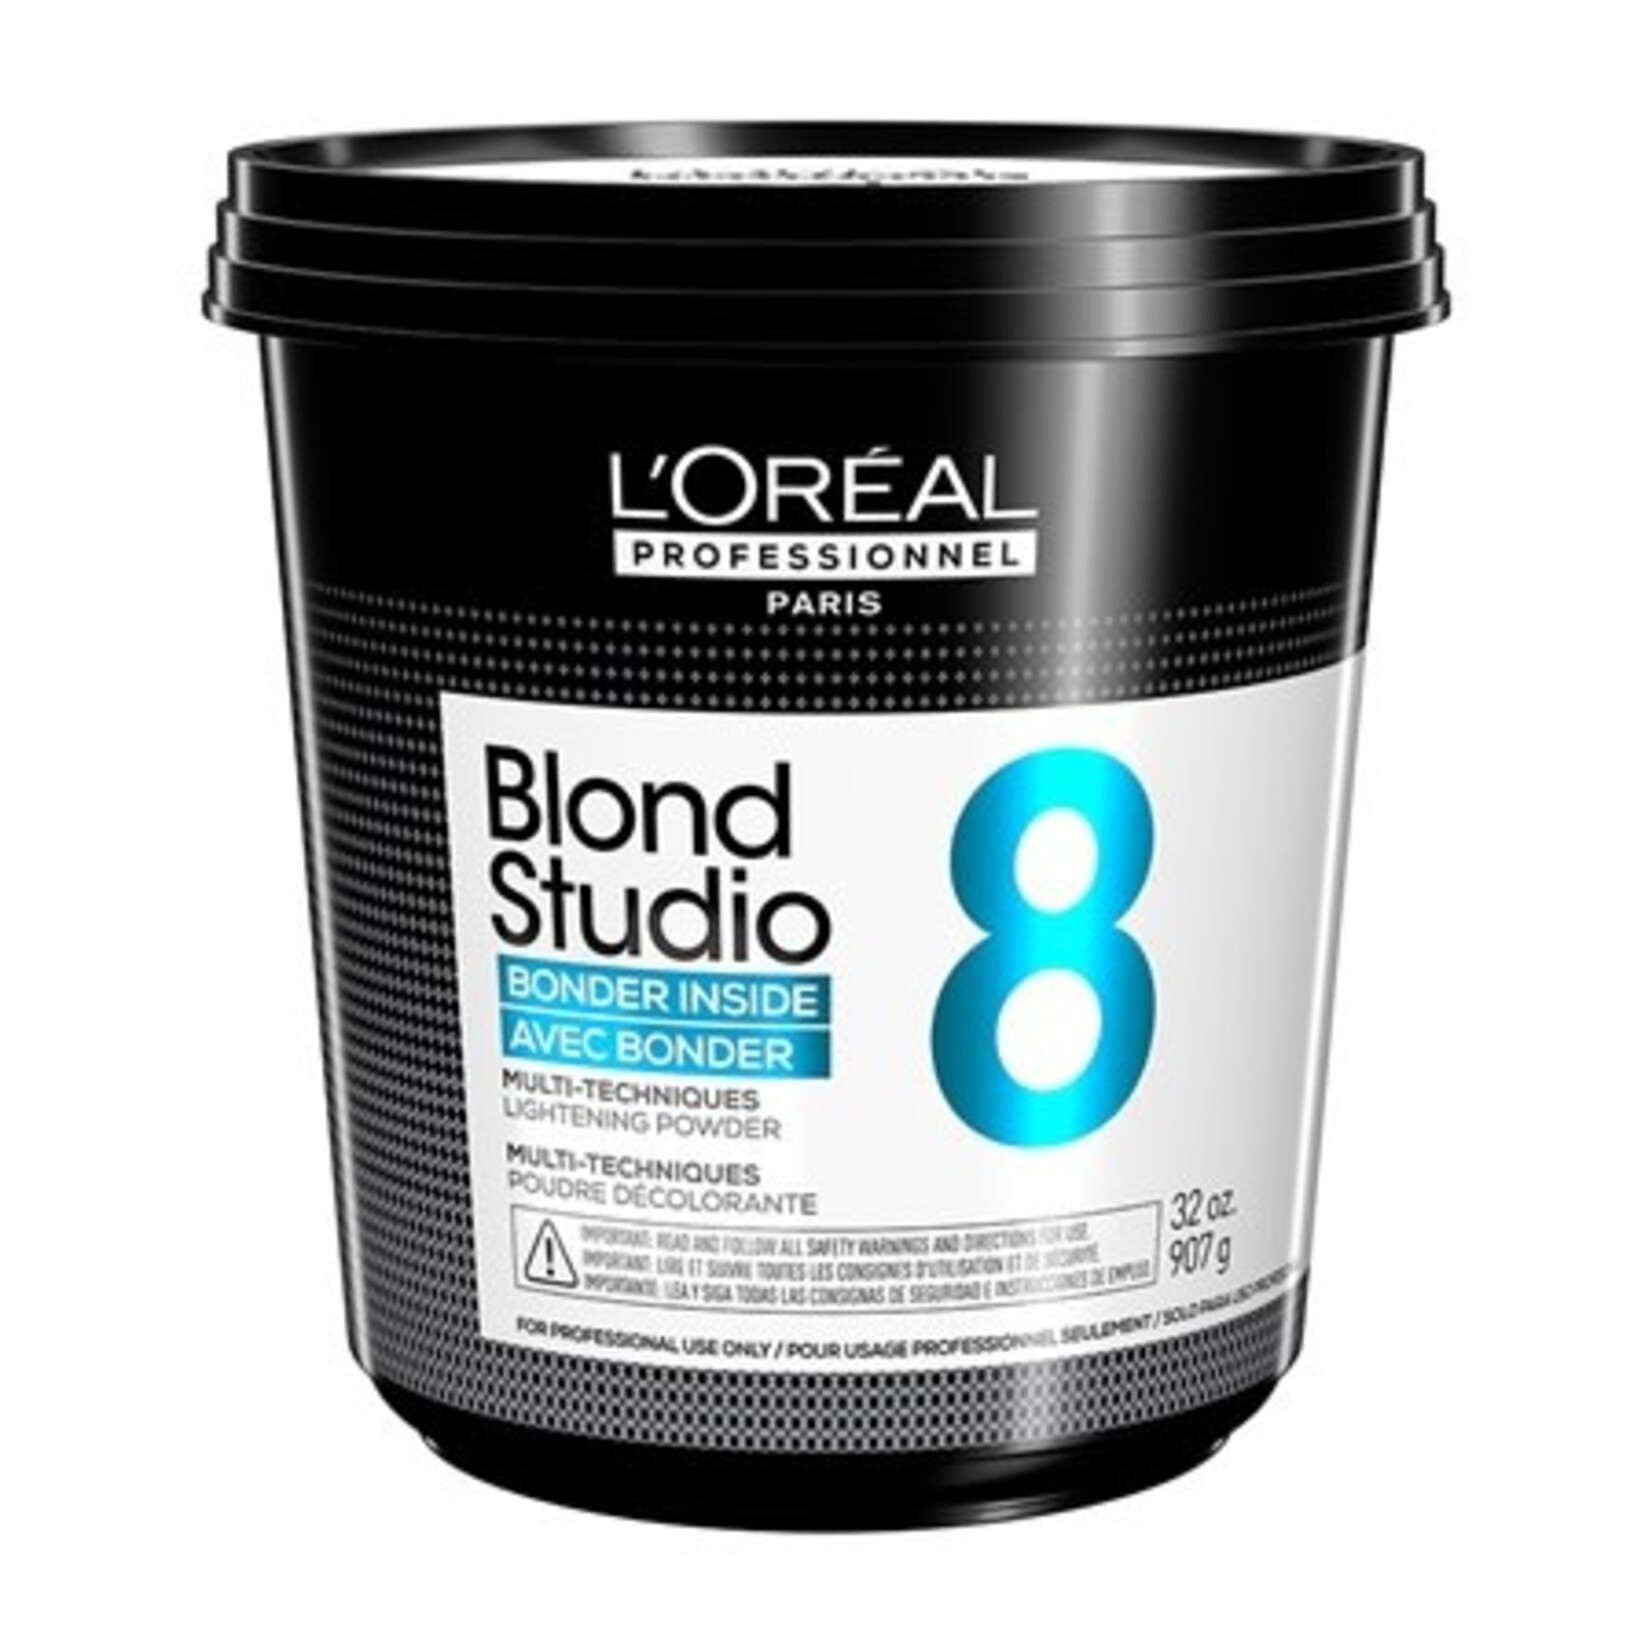 L'Oréal L'Oréal Professionnel - Blond Studio Bleach 907g